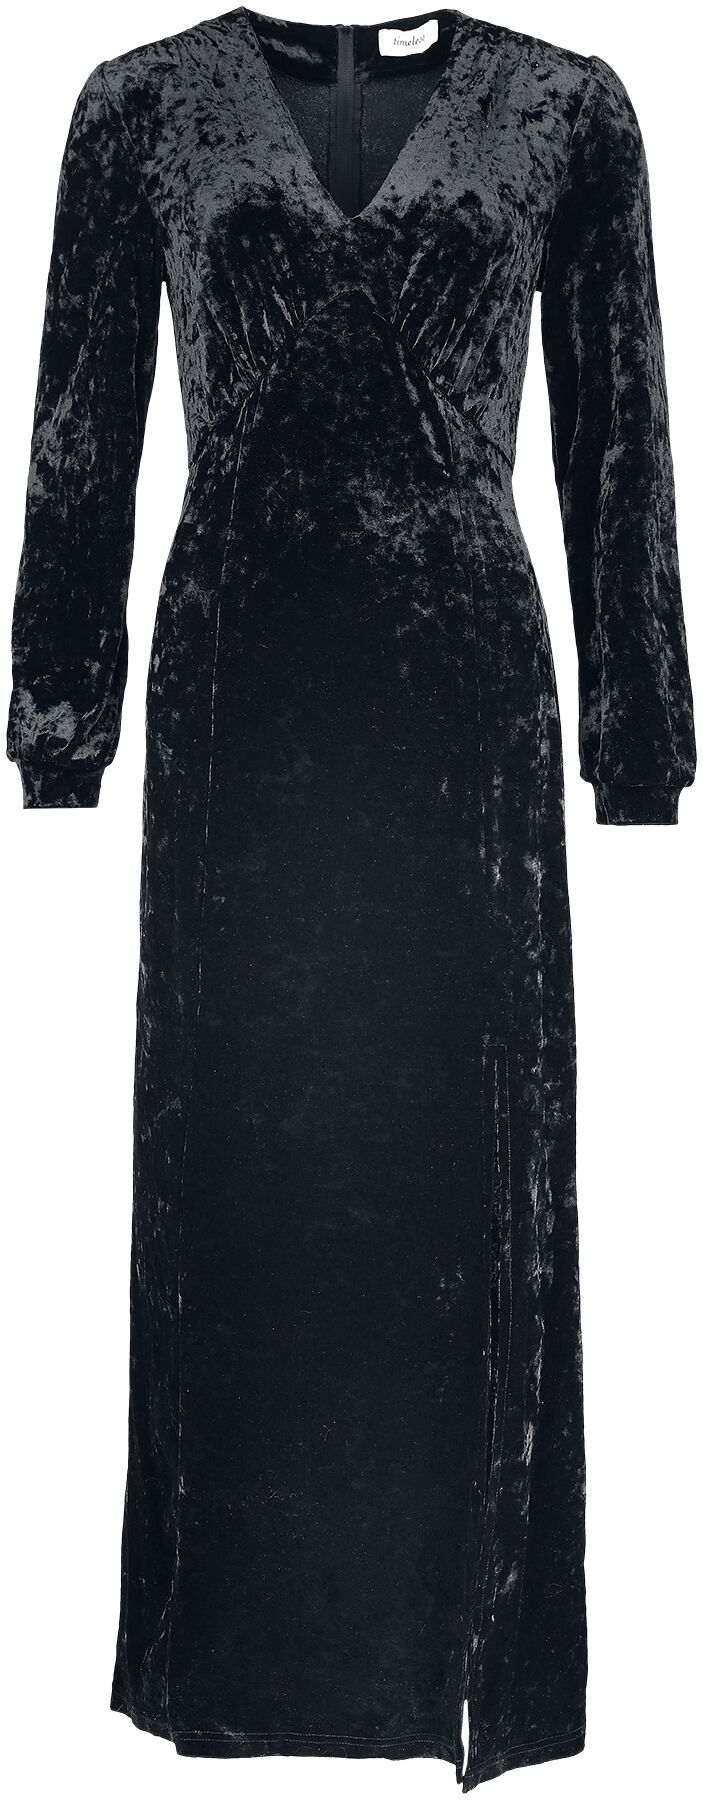 Timeless London - Rockabilly Kleid lang - Miley Black Dress - XS bis L - für Damen - Größe XS - schwarz